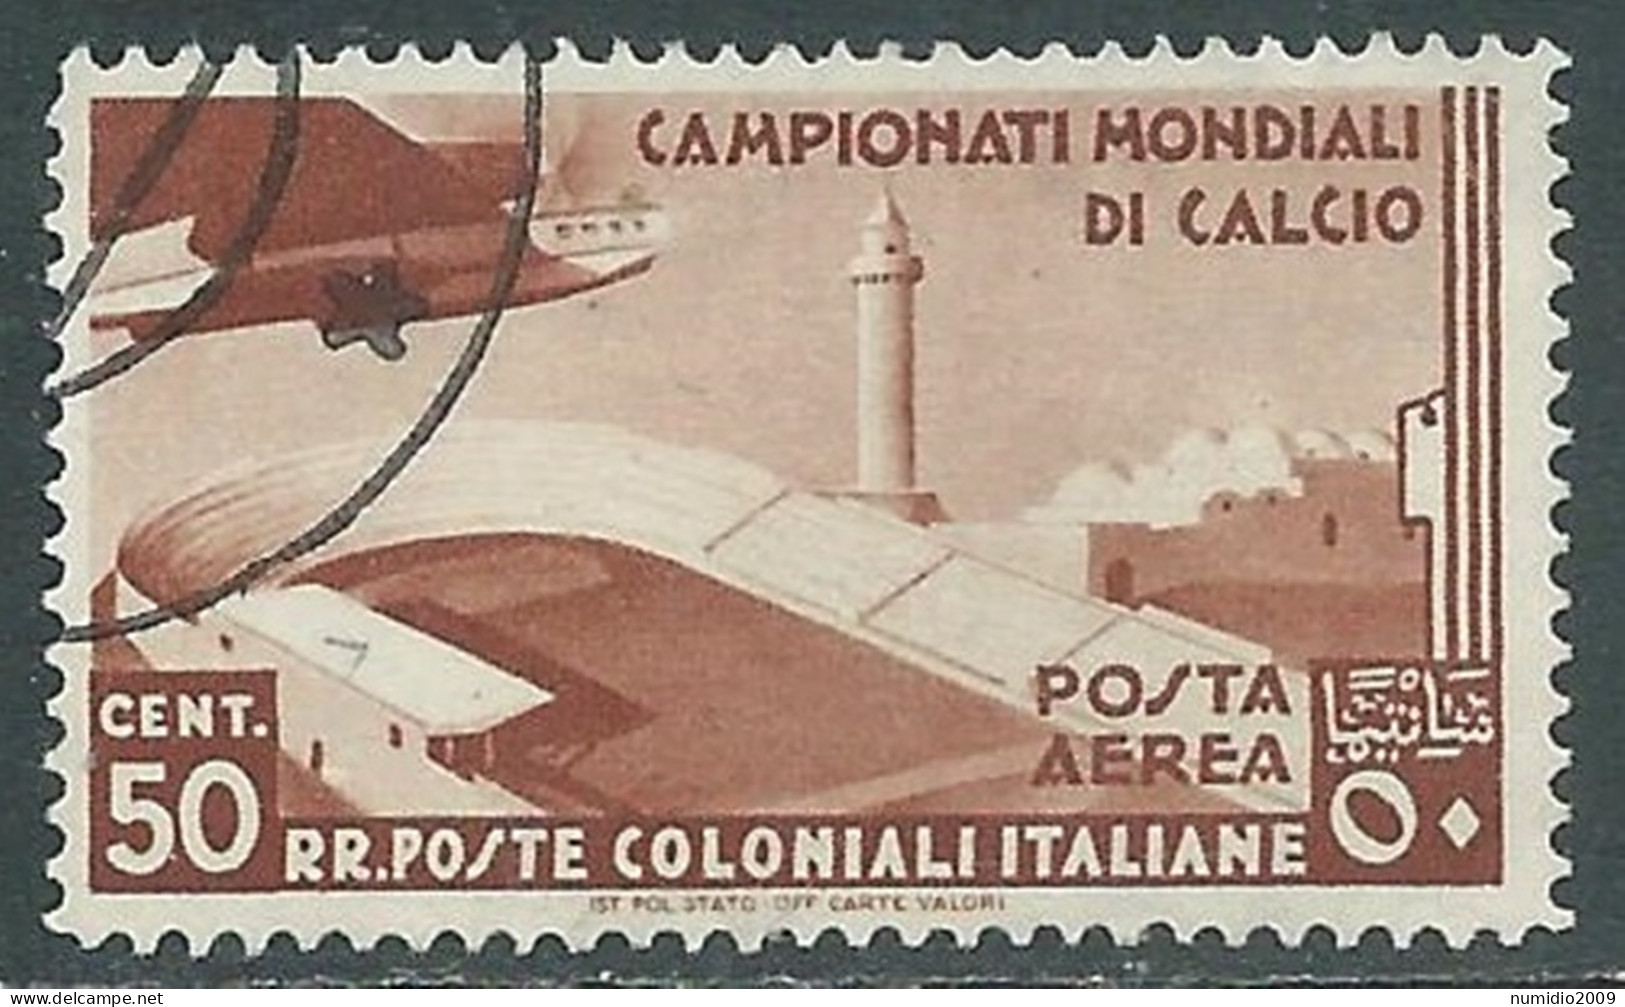 1934 EMISSIONI GENERALI POSTA AEREA USATO MONDIALI DI CALCIO 50 CENT - RA6-3 - Amtliche Ausgaben